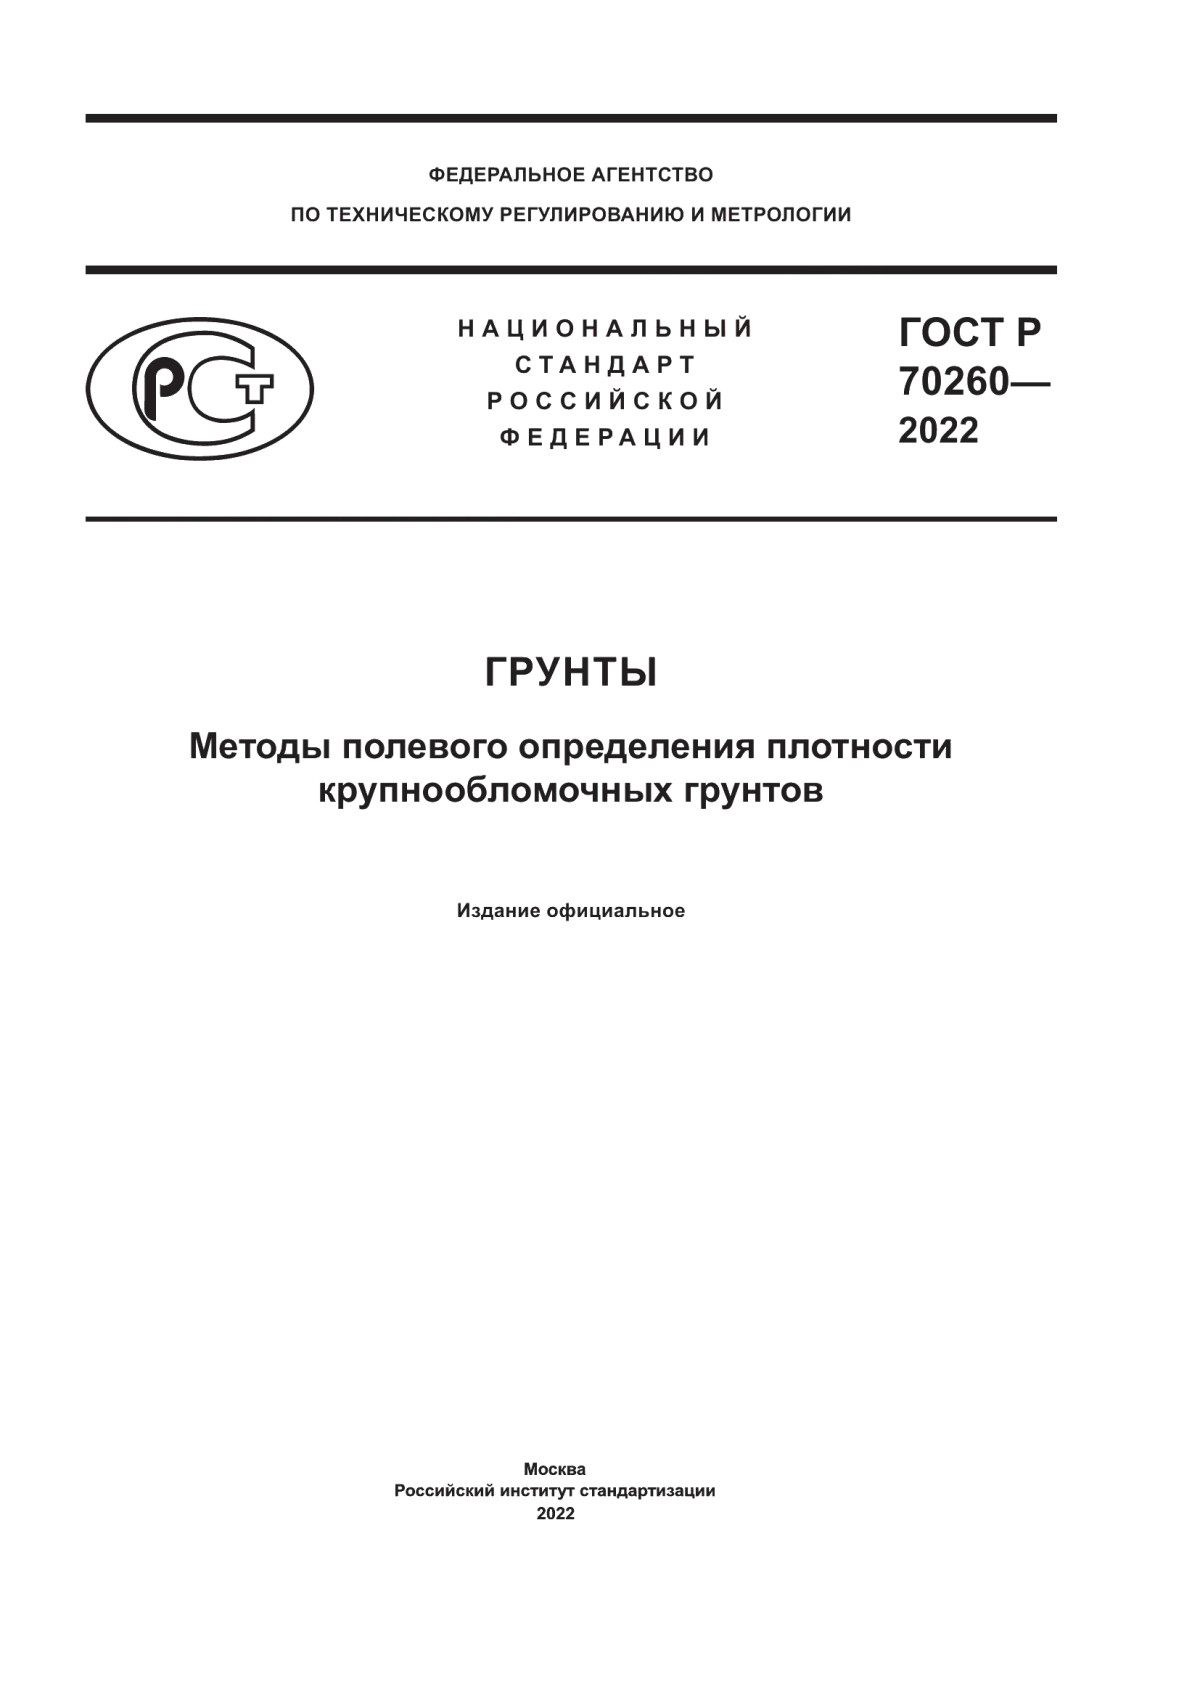 ГОСТ Р 70260-2022 Грунты. Методы полевого определения плотности крупнообломочных грунтов